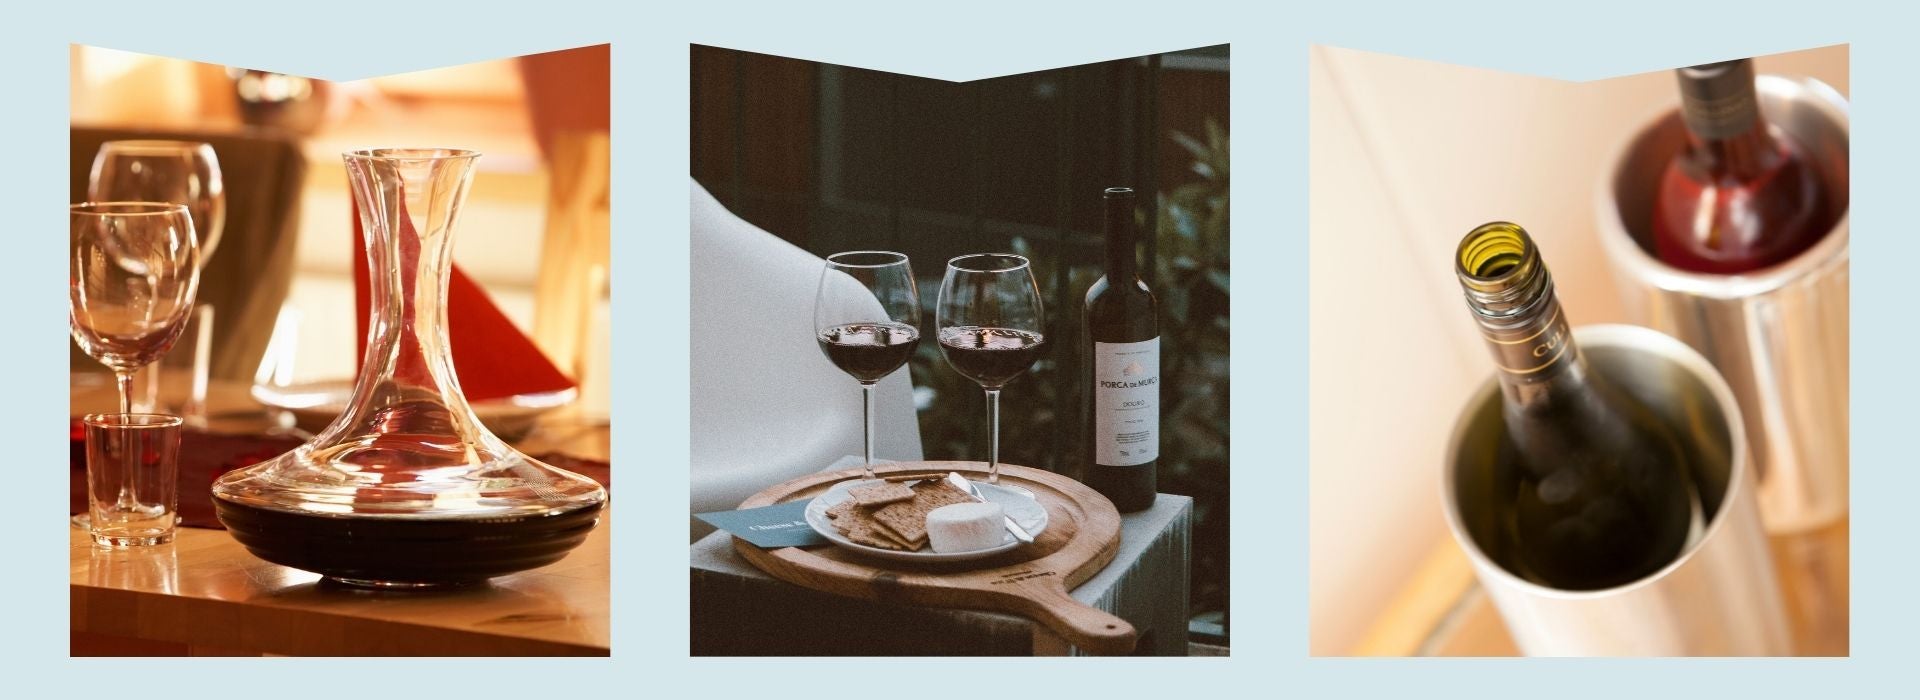 wine glasses, wine decanter, wine chiller